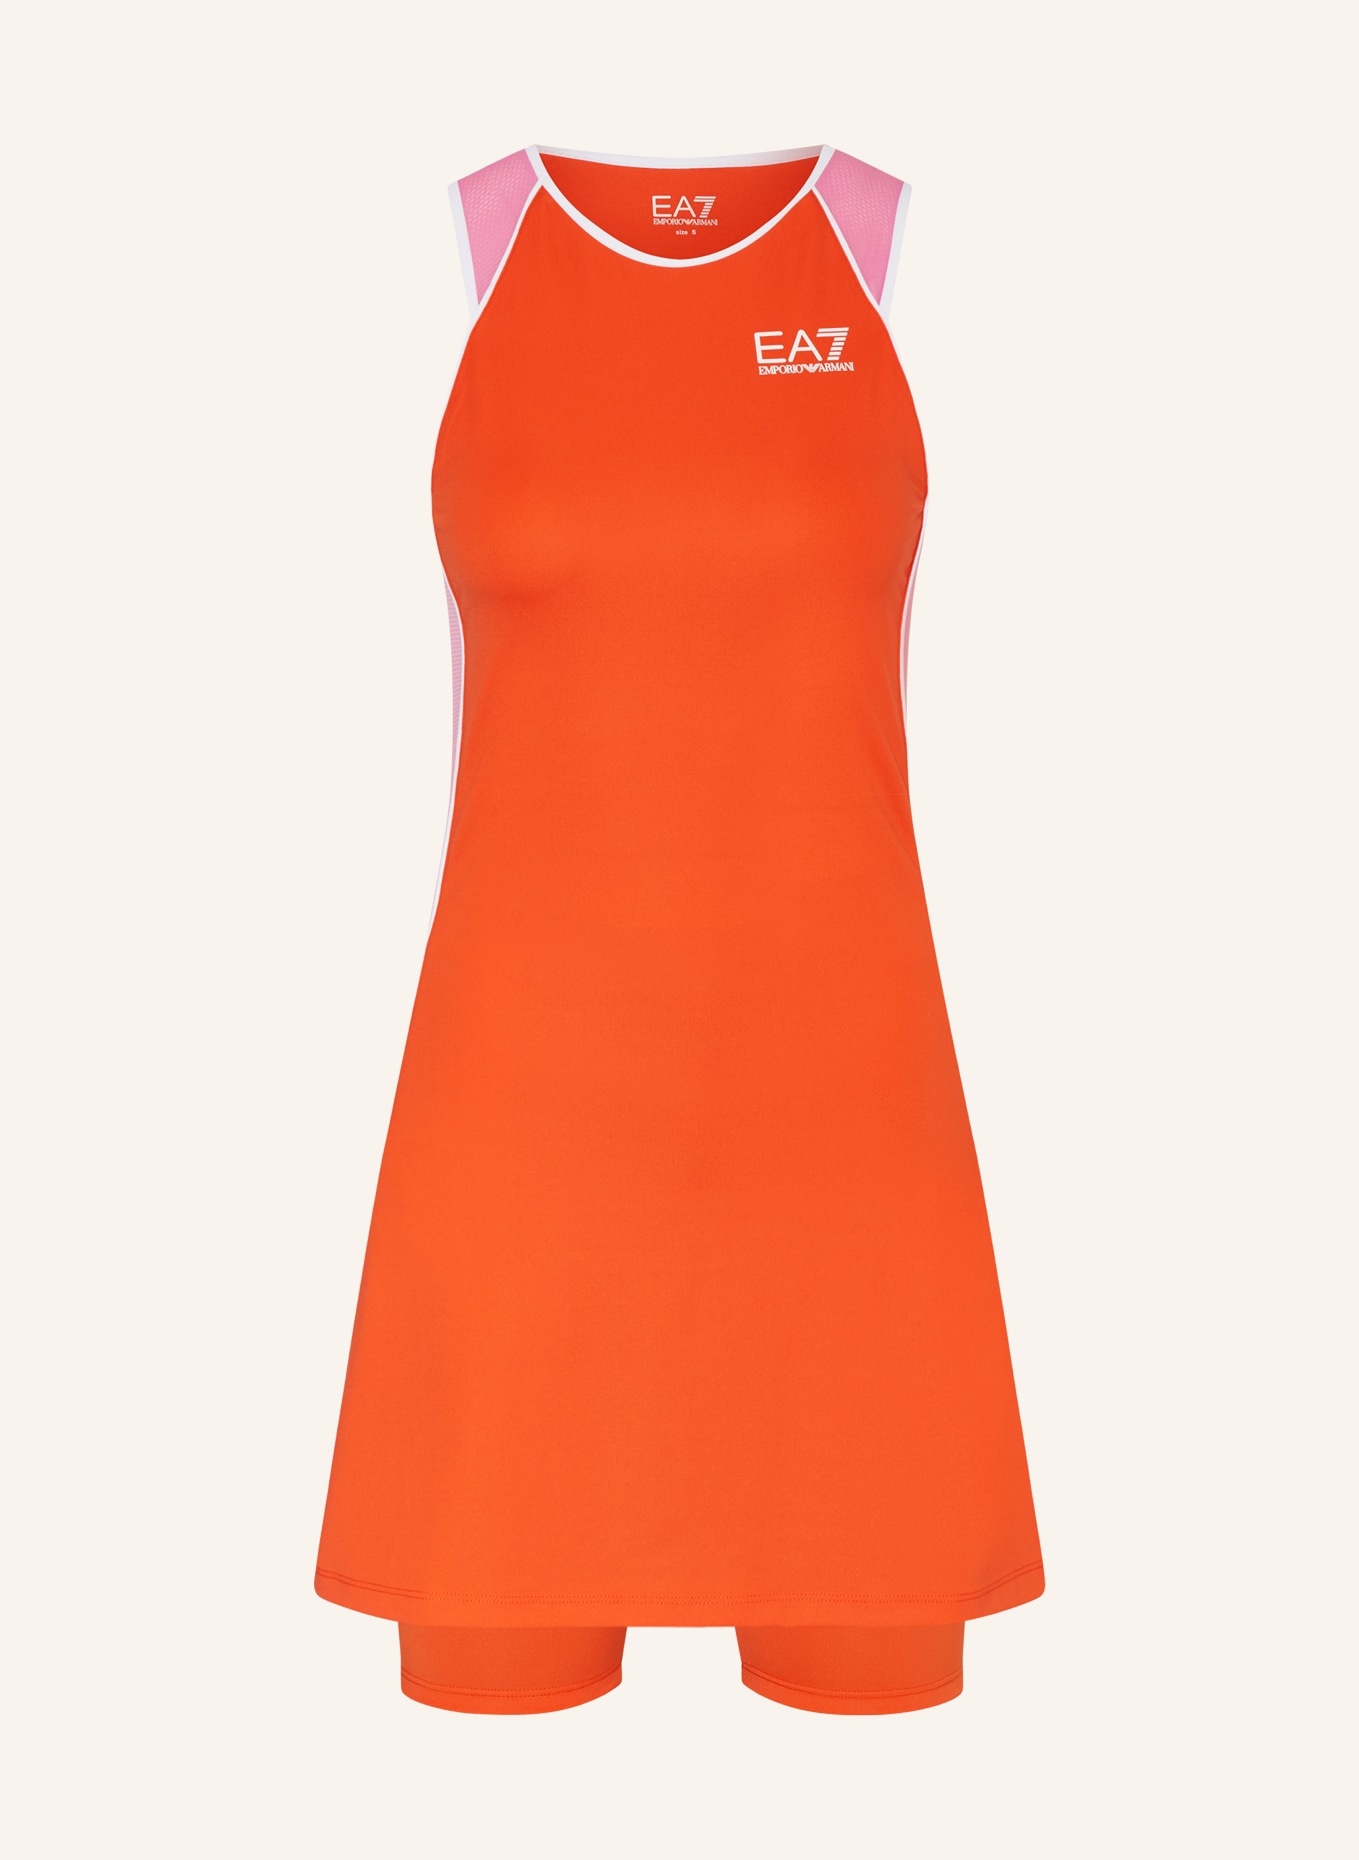 EA7 EMPORIO ARMANI Tennis dress, Color: ORANGE/ PINK (Image 1)